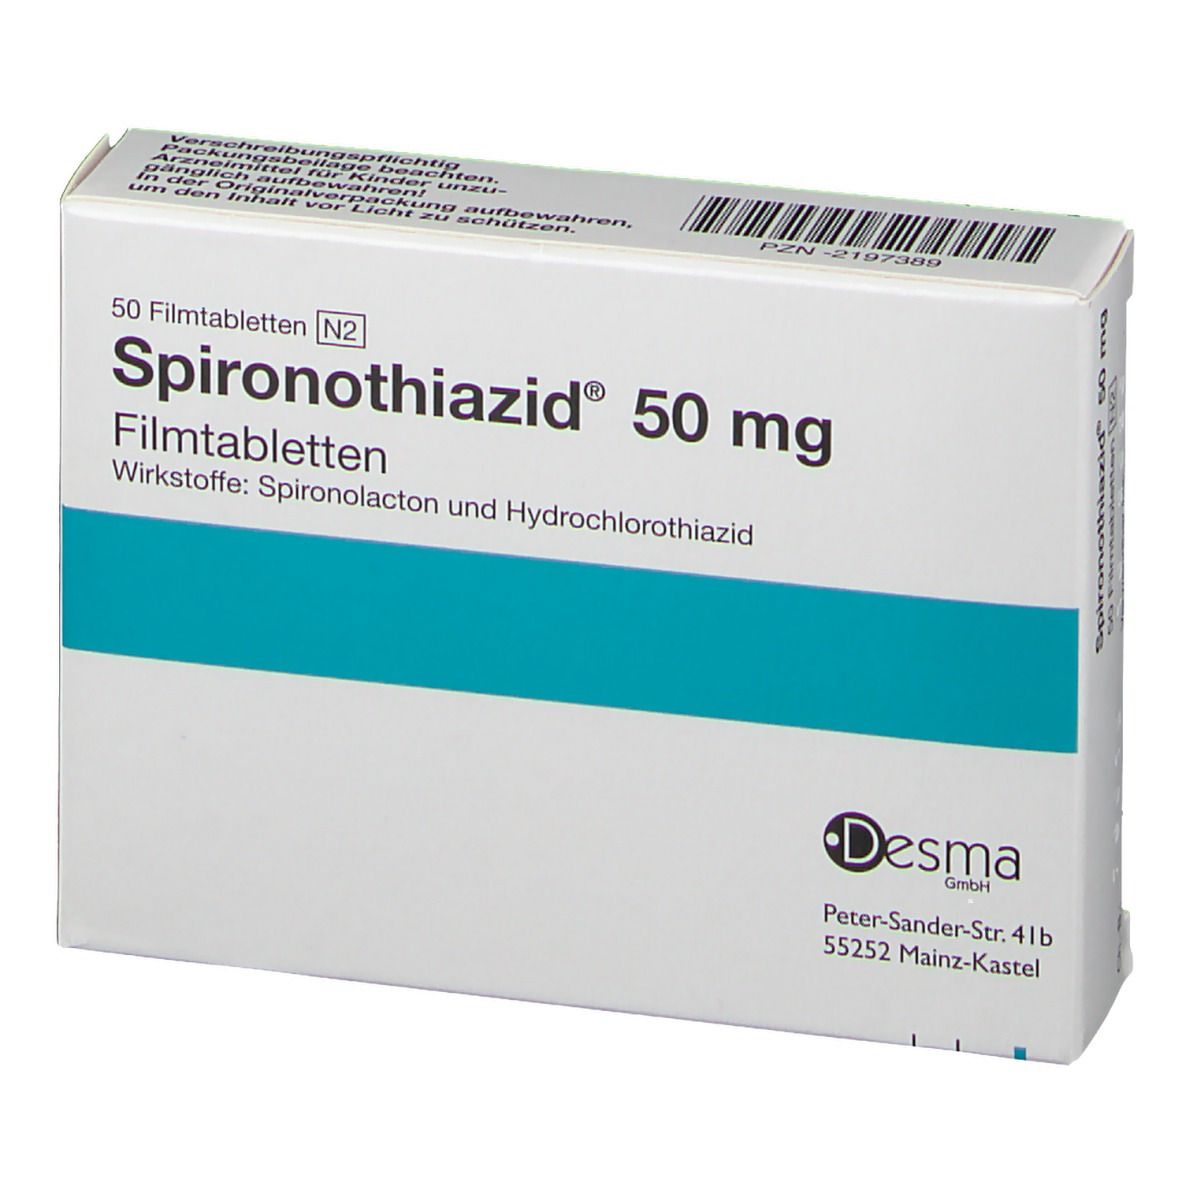 Spironothiazid® 50 mg